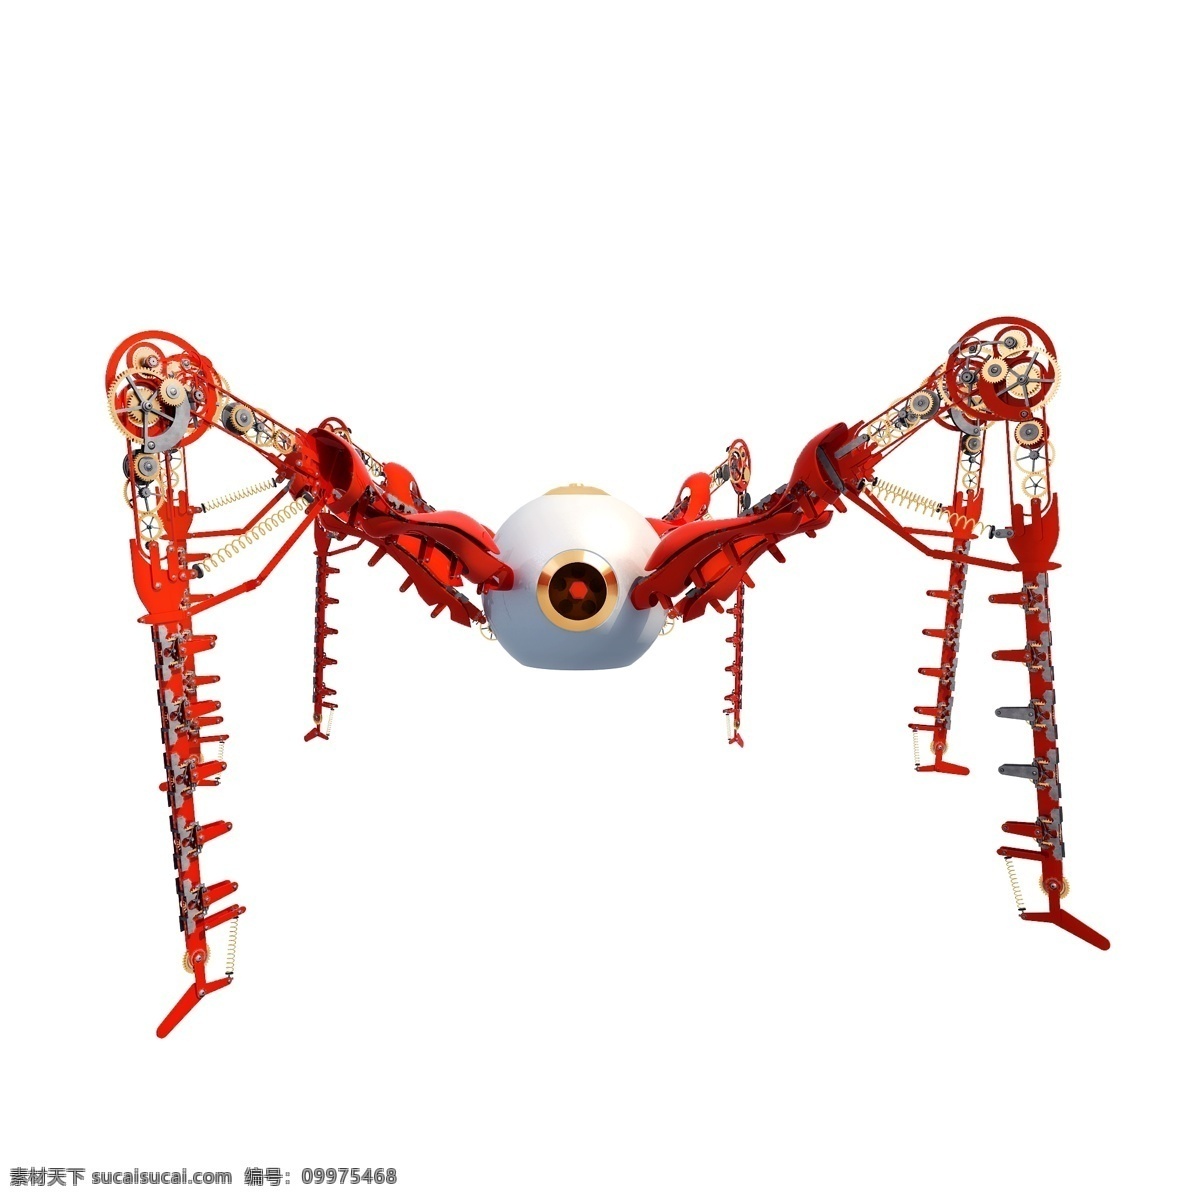 精致 科幻 机器人 图 立体 仿真 蜘蛛 螃蟹 武器 质感 金属 机械 创意 套图 png图